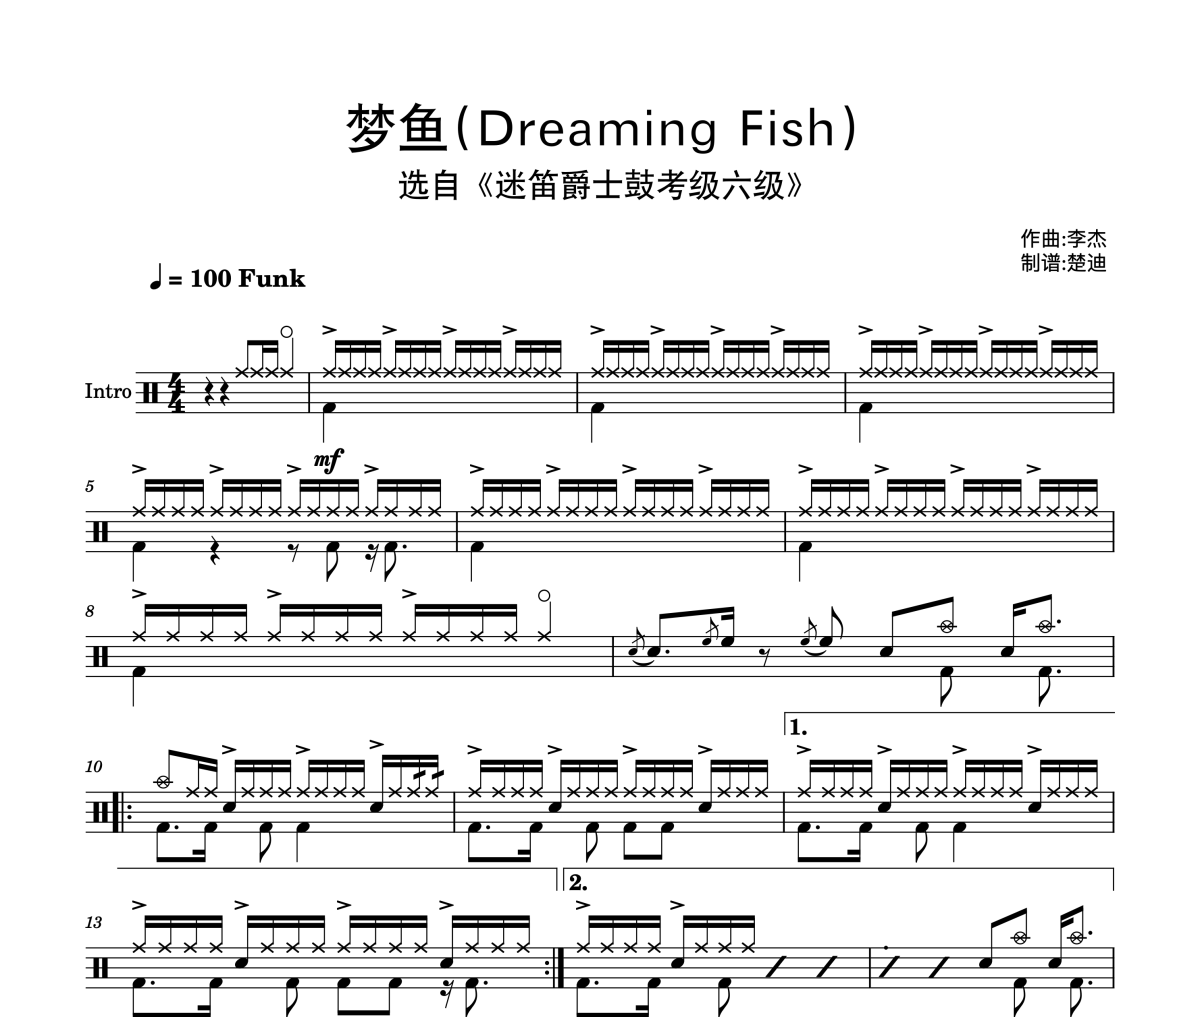 迷笛爵士鼓考级-梦鱼(Dreaming Fish)迷笛6级曲架子鼓|爵士鼓|鼓谱